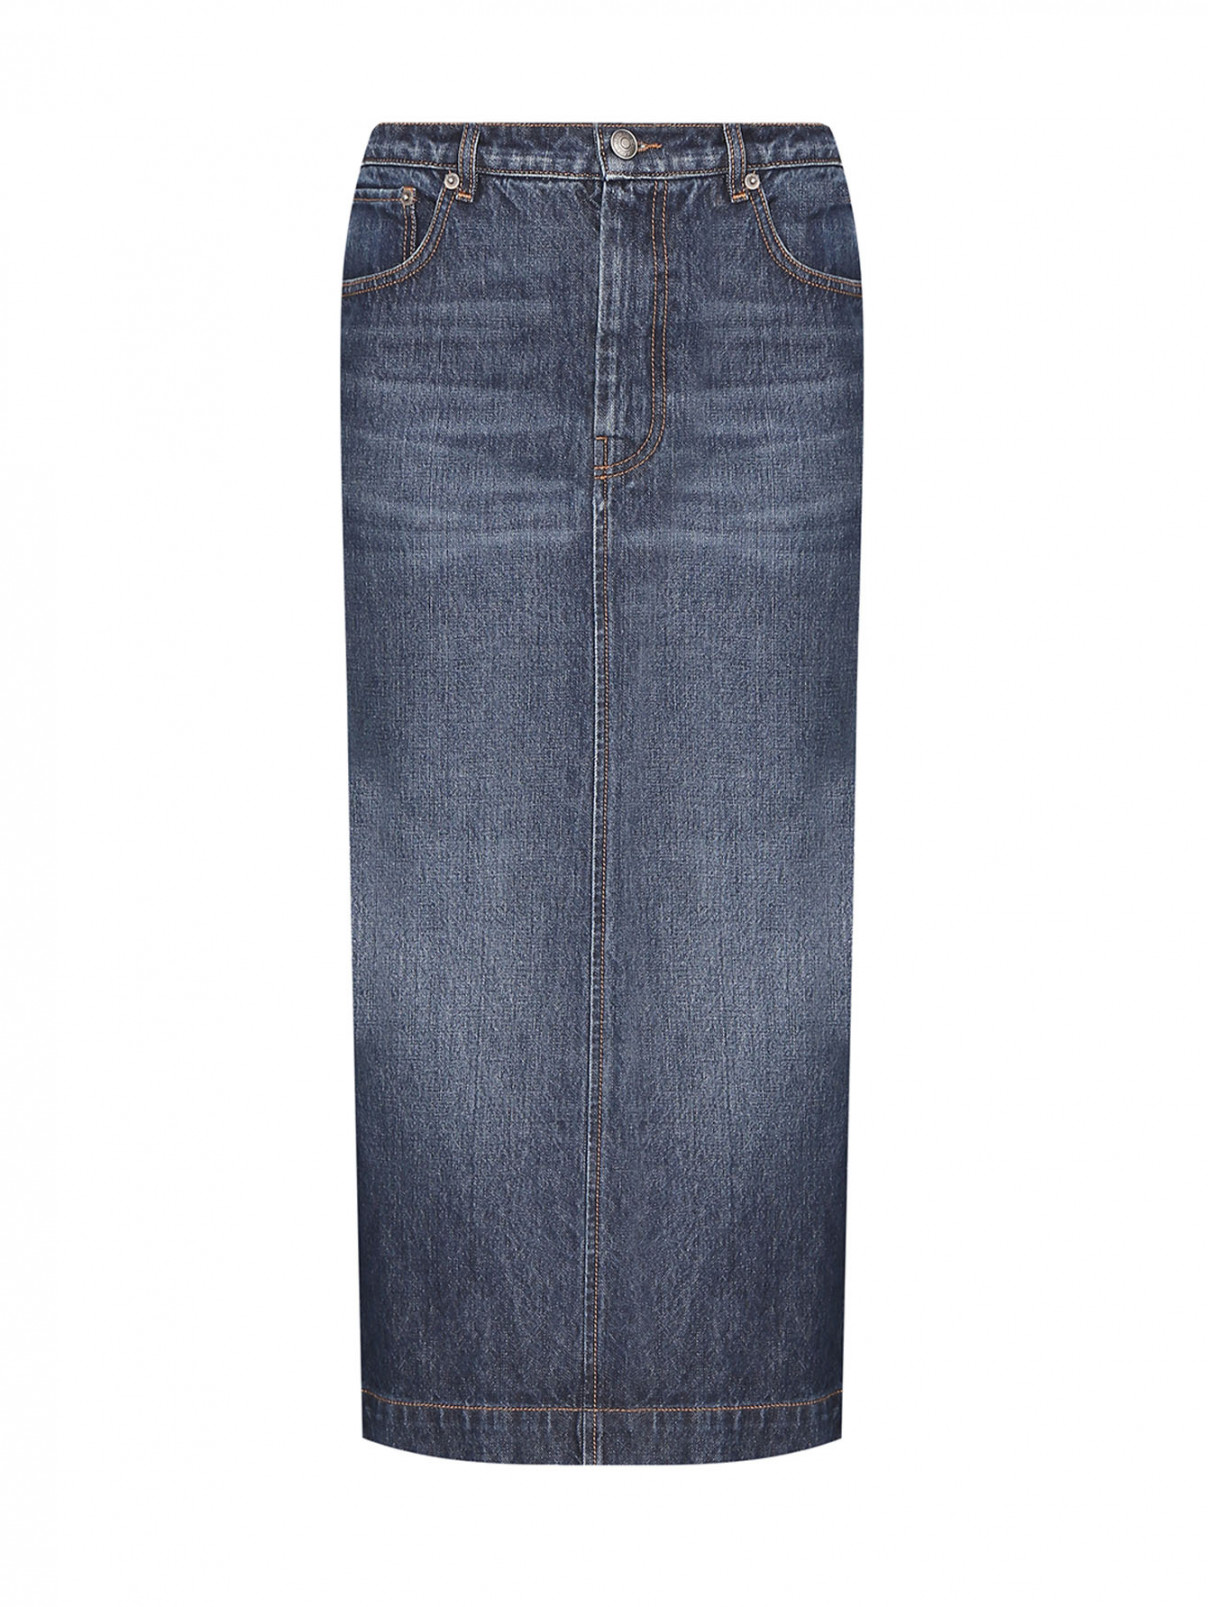 Джинсовая юбка-миди с разрезами Sportmax  –  Общий вид  – Цвет:  Синий